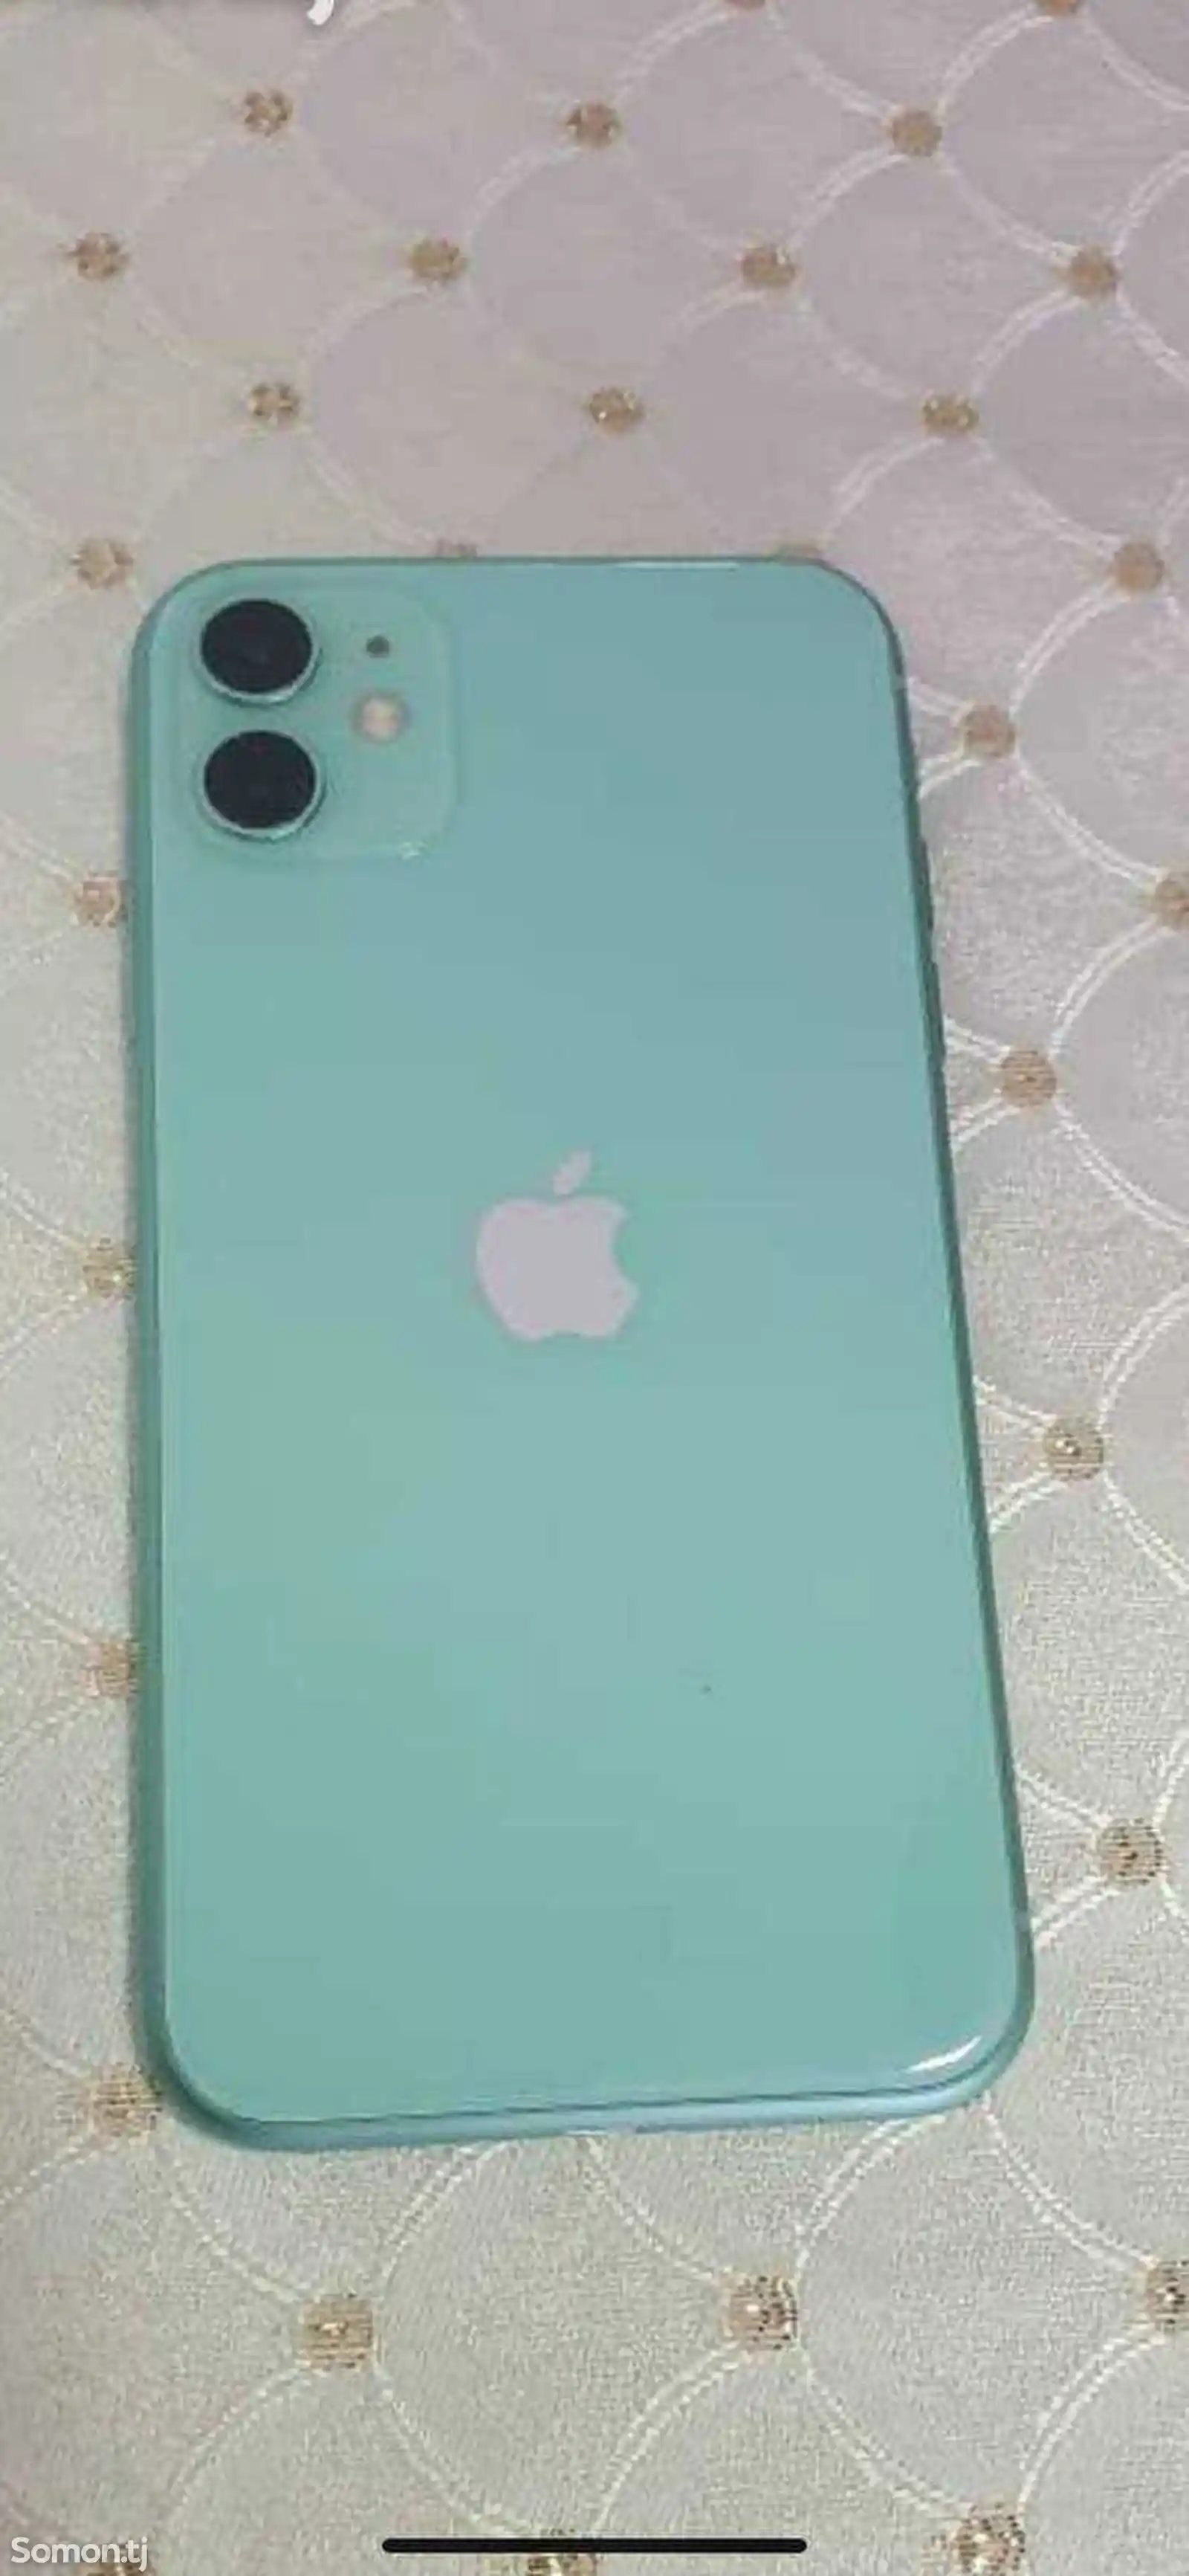 Apple iPhone 11, 128 gb, Green-2